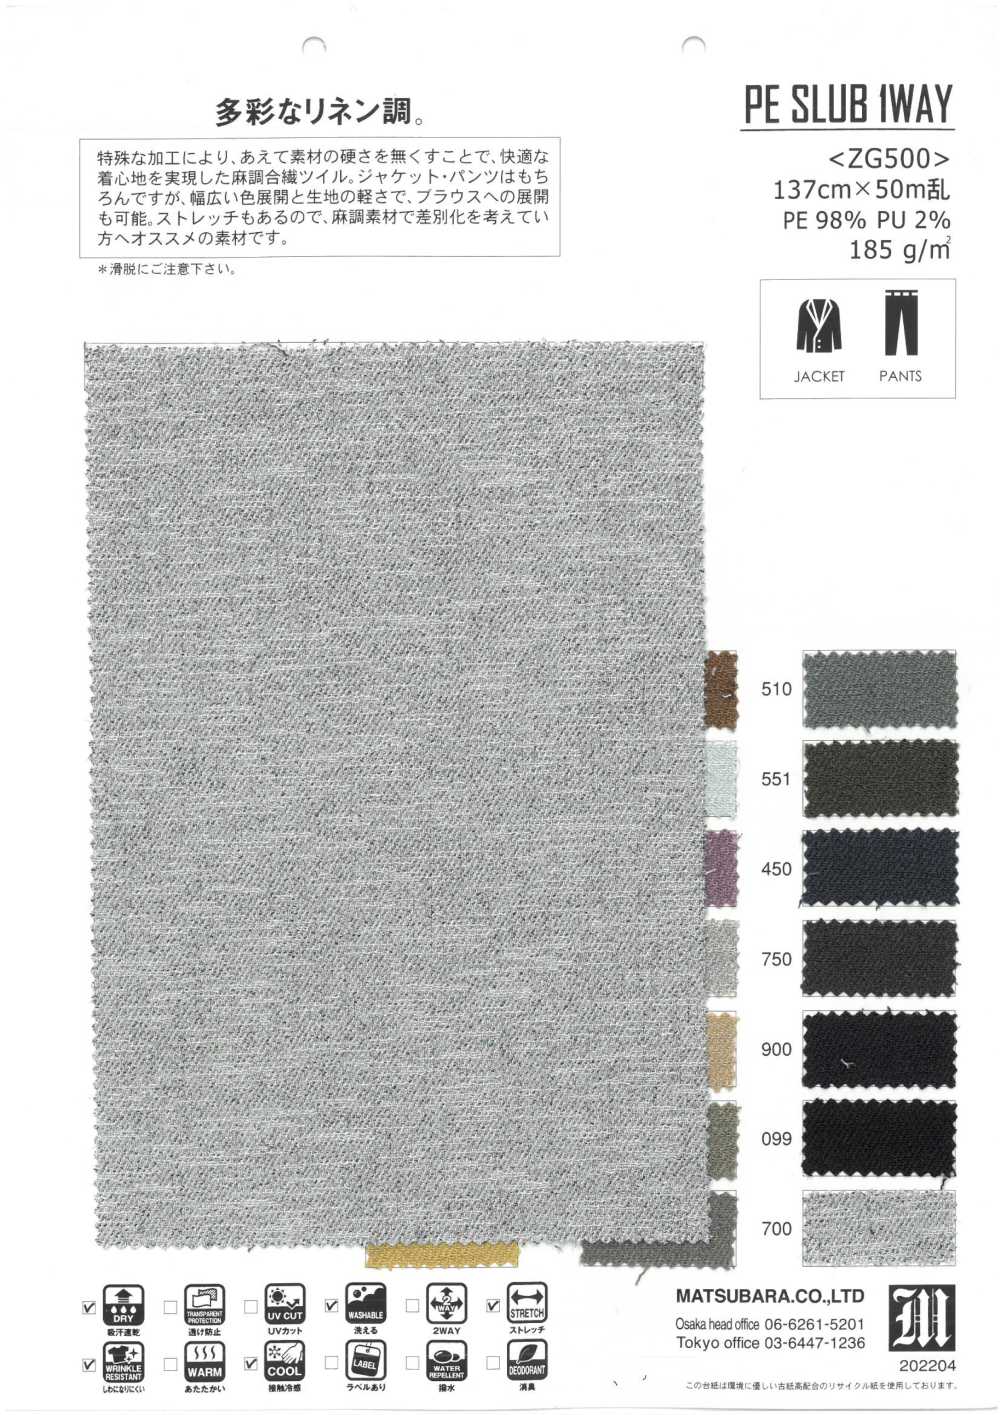 ZG500 PE SLUB 1WAY[Textile / Fabric] Matsubara